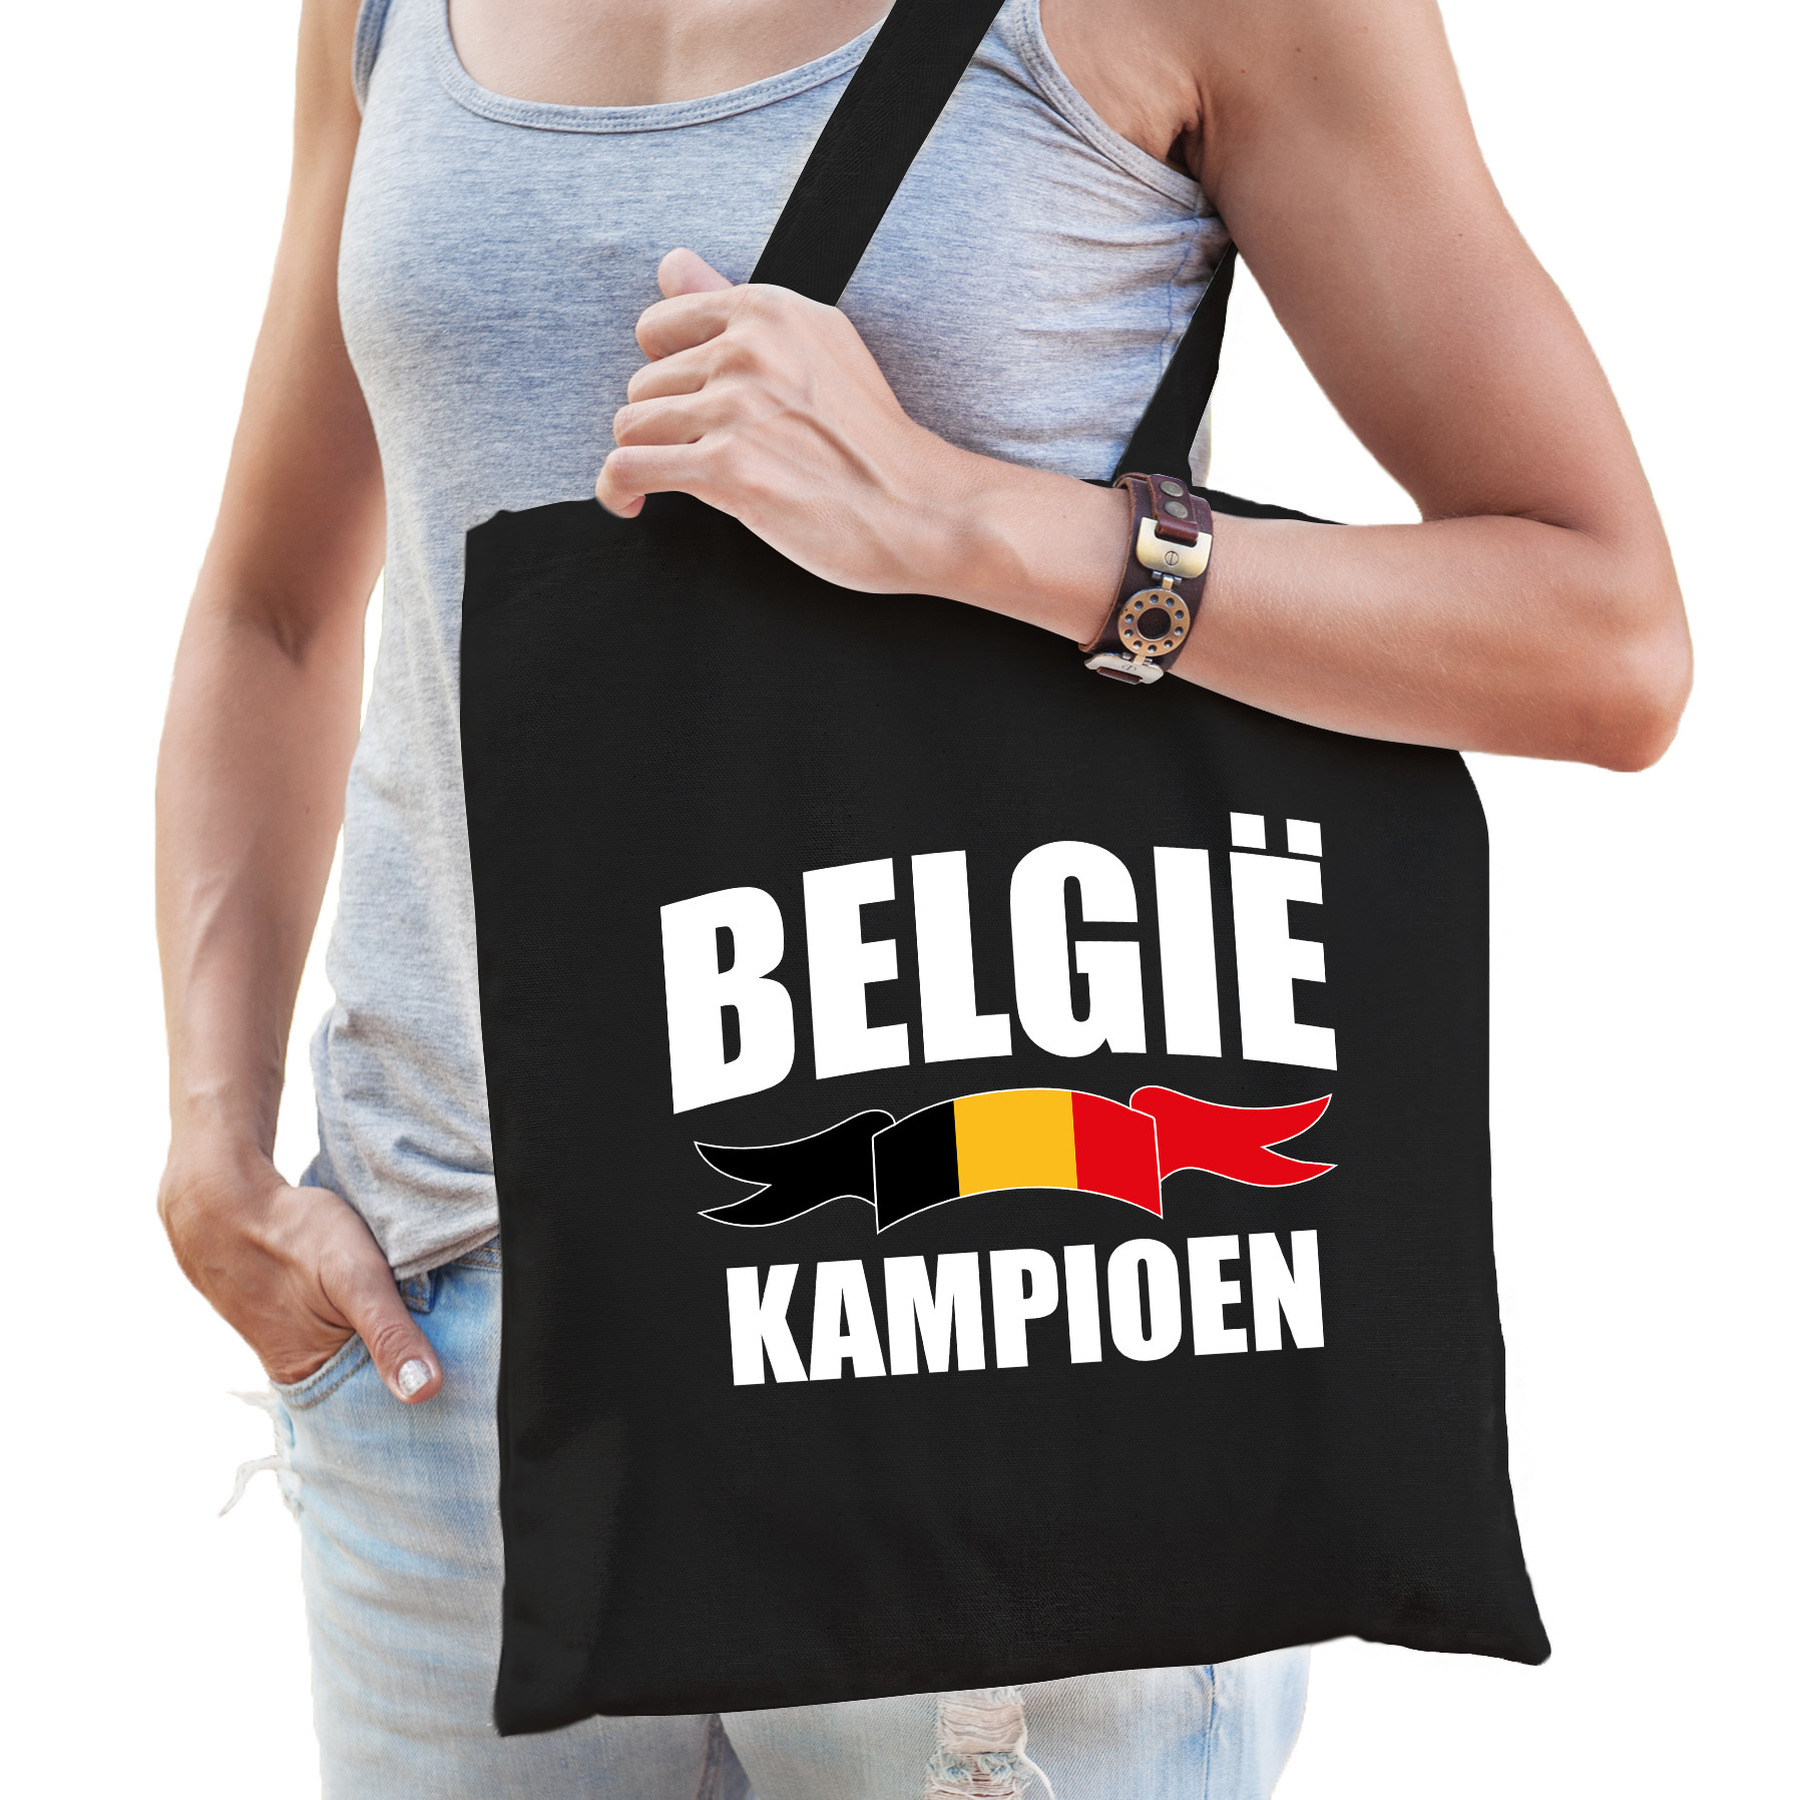 Belgie kampioen supporter cadeau tas zwart voor dames en heren